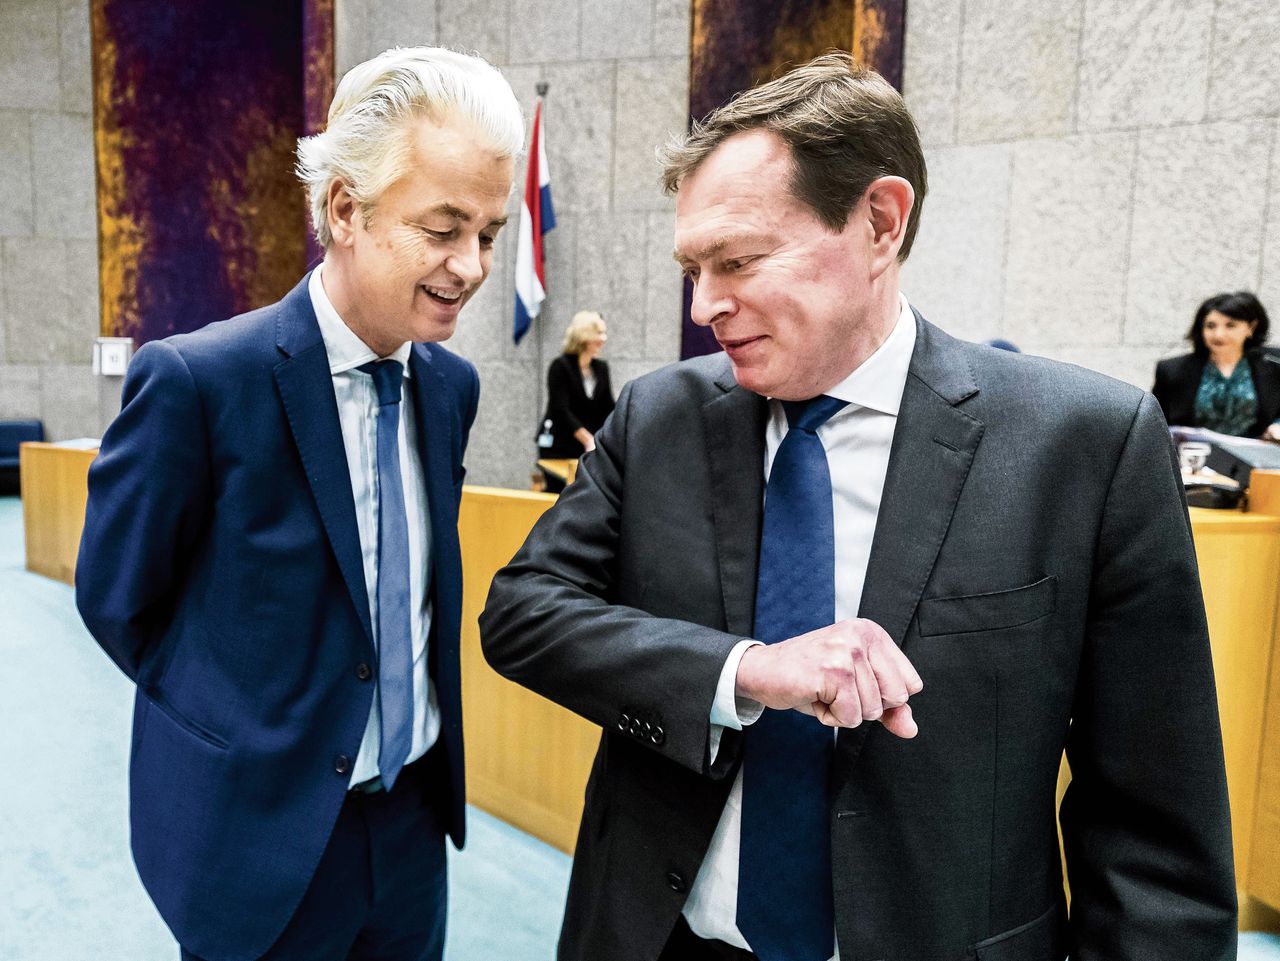 Bruno Bruins geeft Geert Wilders een ‘veilige’ ellebooggroet in de Tweede Kamer. Een week later wordt een debat, met onder anderen Wilders aan de interruptiemicrofoon, Bruins te veel, en zakt hij in elkaar.